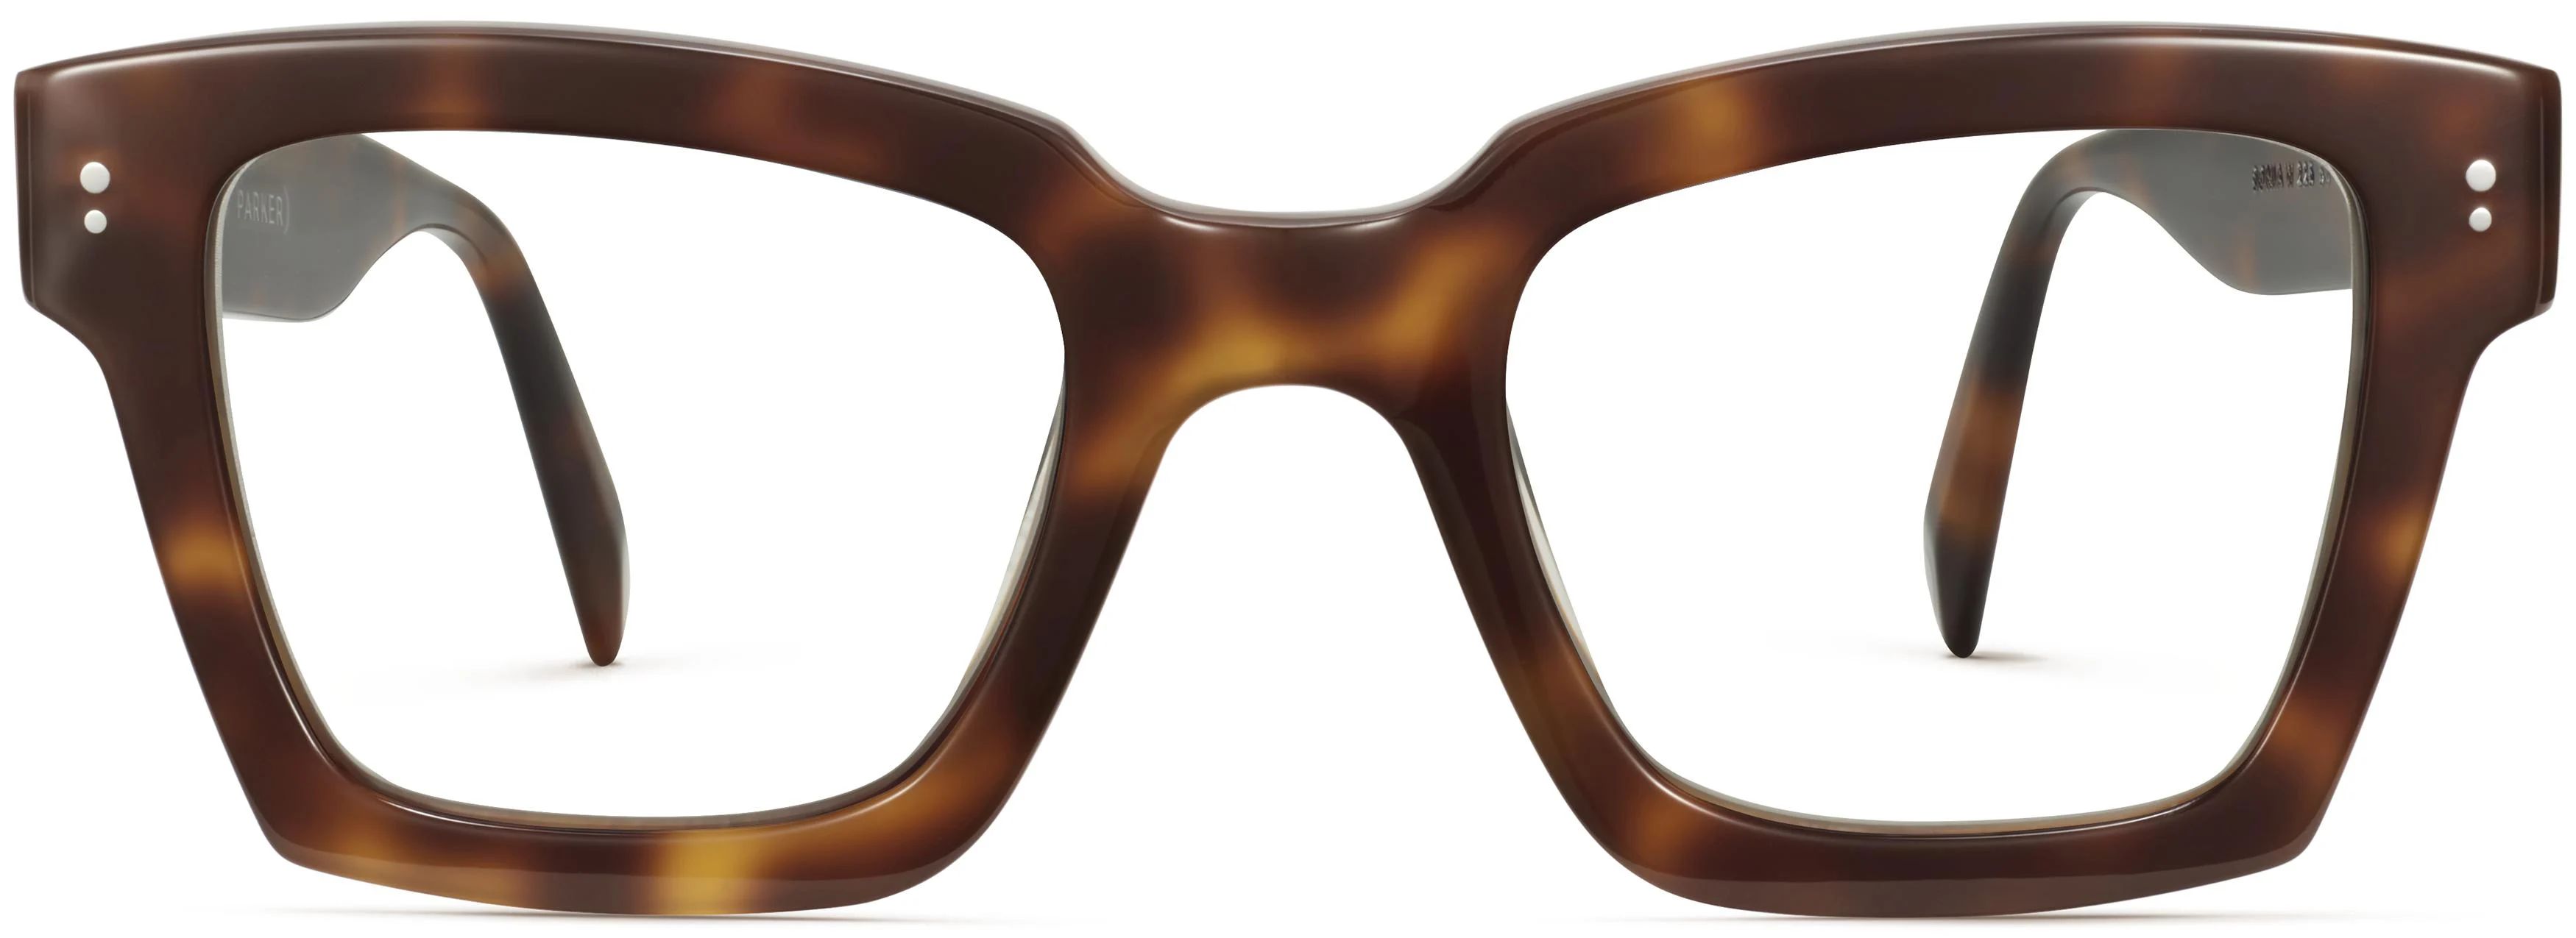 Sonia Eyeglasses in Oak Barrel | Warby Parker | Warby Parker (US)